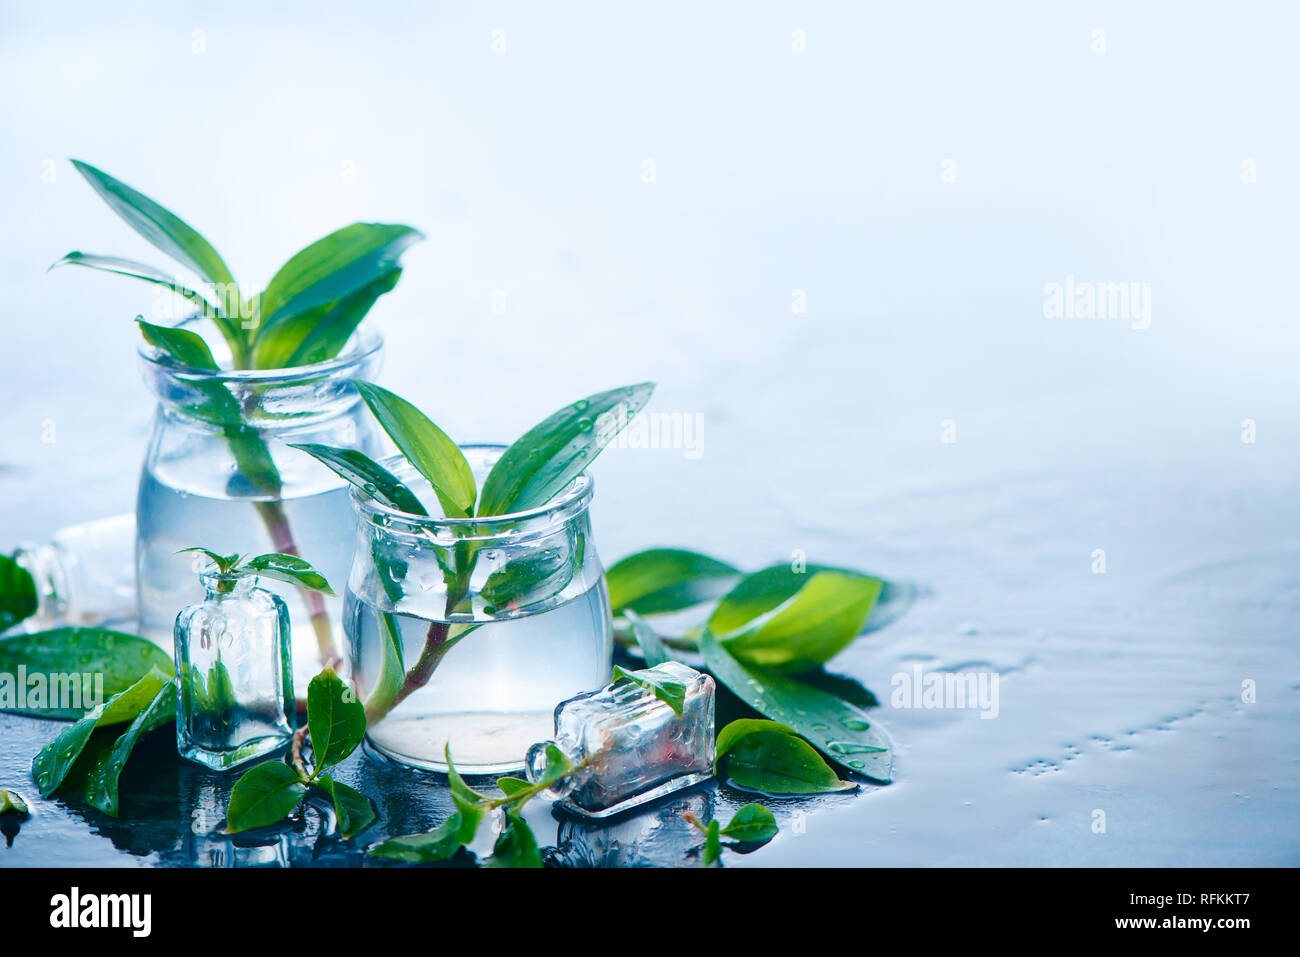 Les plantes vertes en pots de verre en-tête. La clarté et la fraîcheur avec des feuilles et de l'eau concept. Fond clair avec copie espace Banque D'Images